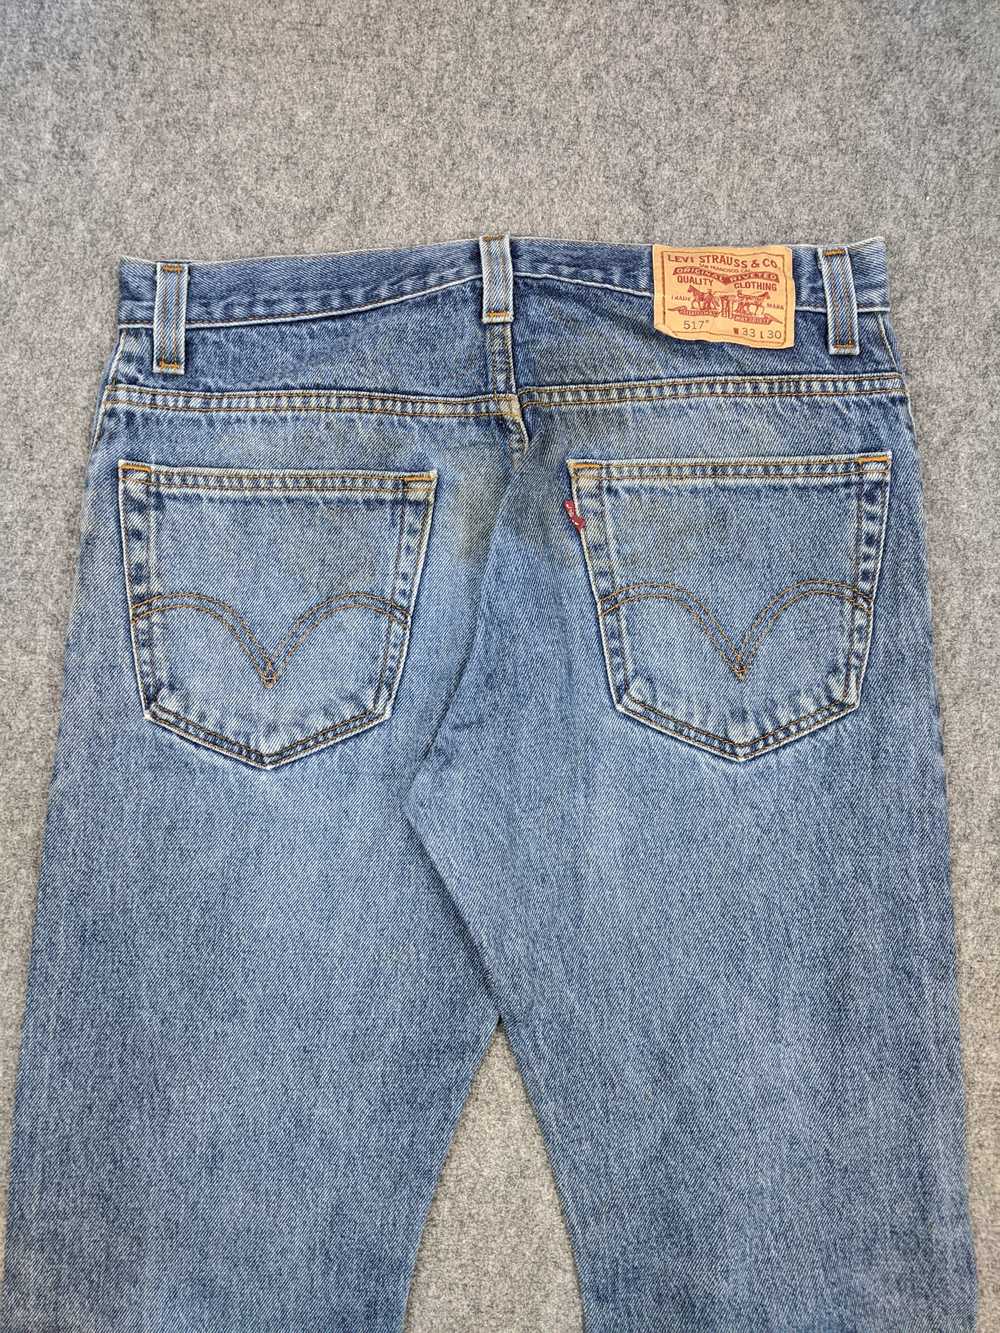 Vintage - Vintage Levis 517 Flared Bootcut Jeans - image 4